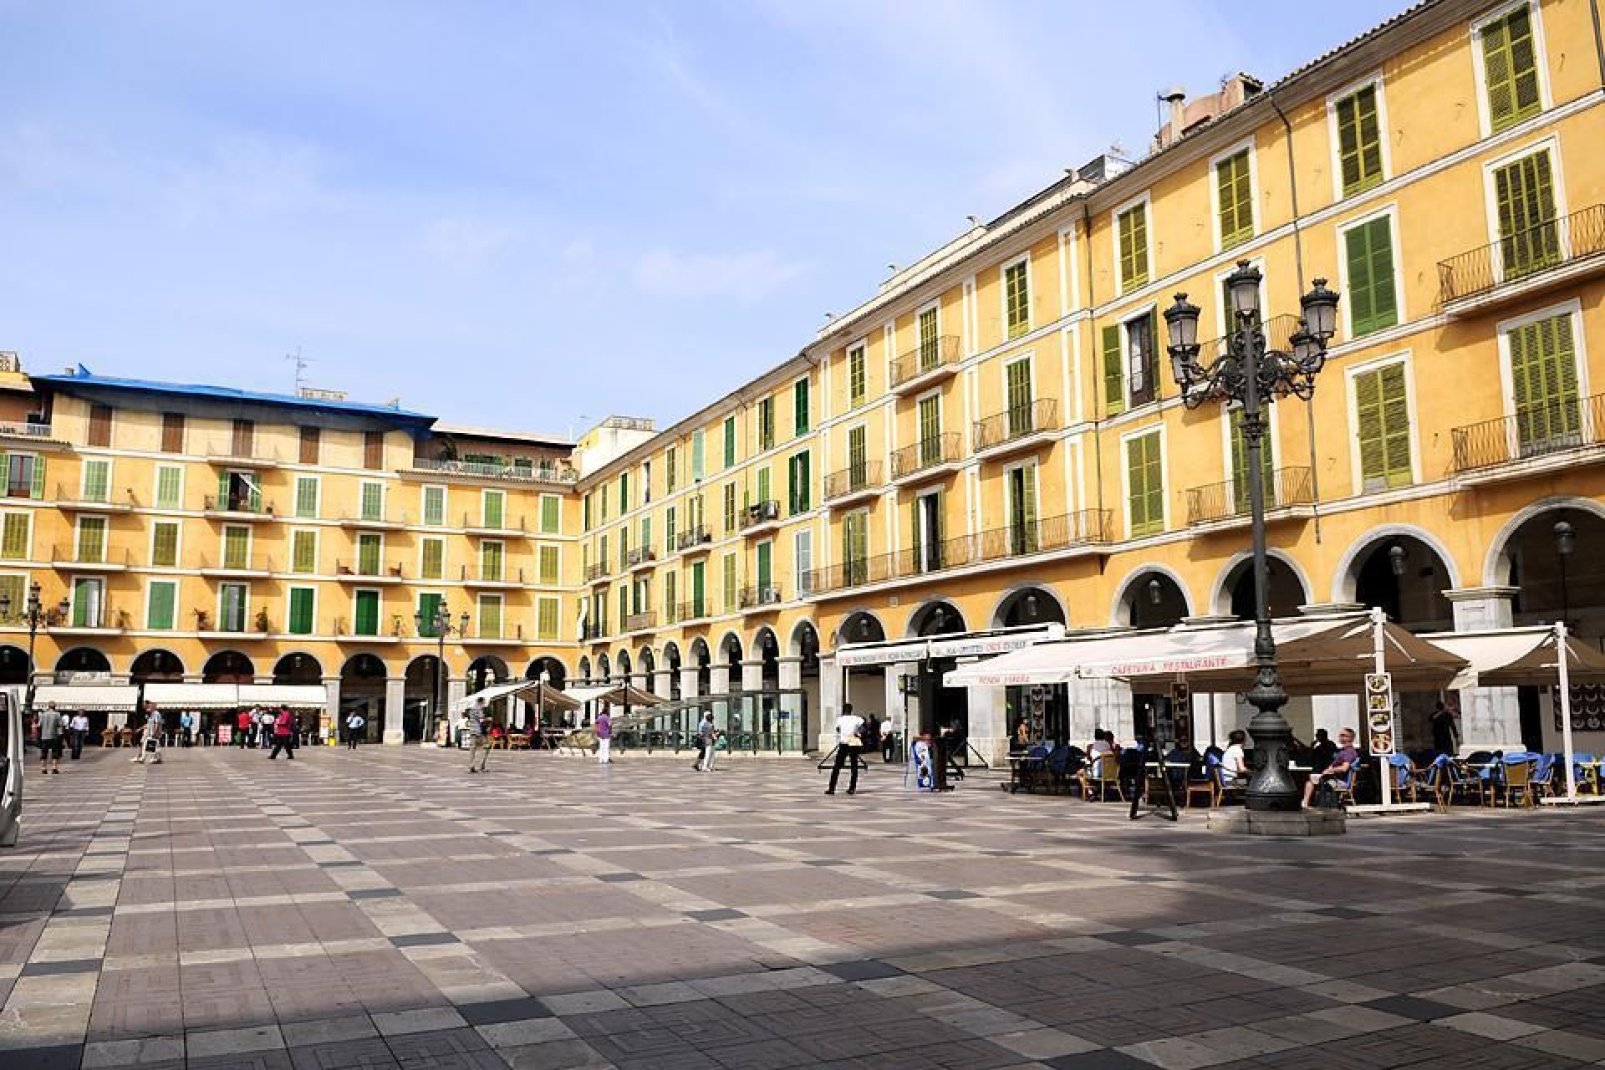 La place principale fait pensée à la plaza Major de Madrid avec ses arcades bordées de bars, boutiques et restaurants.